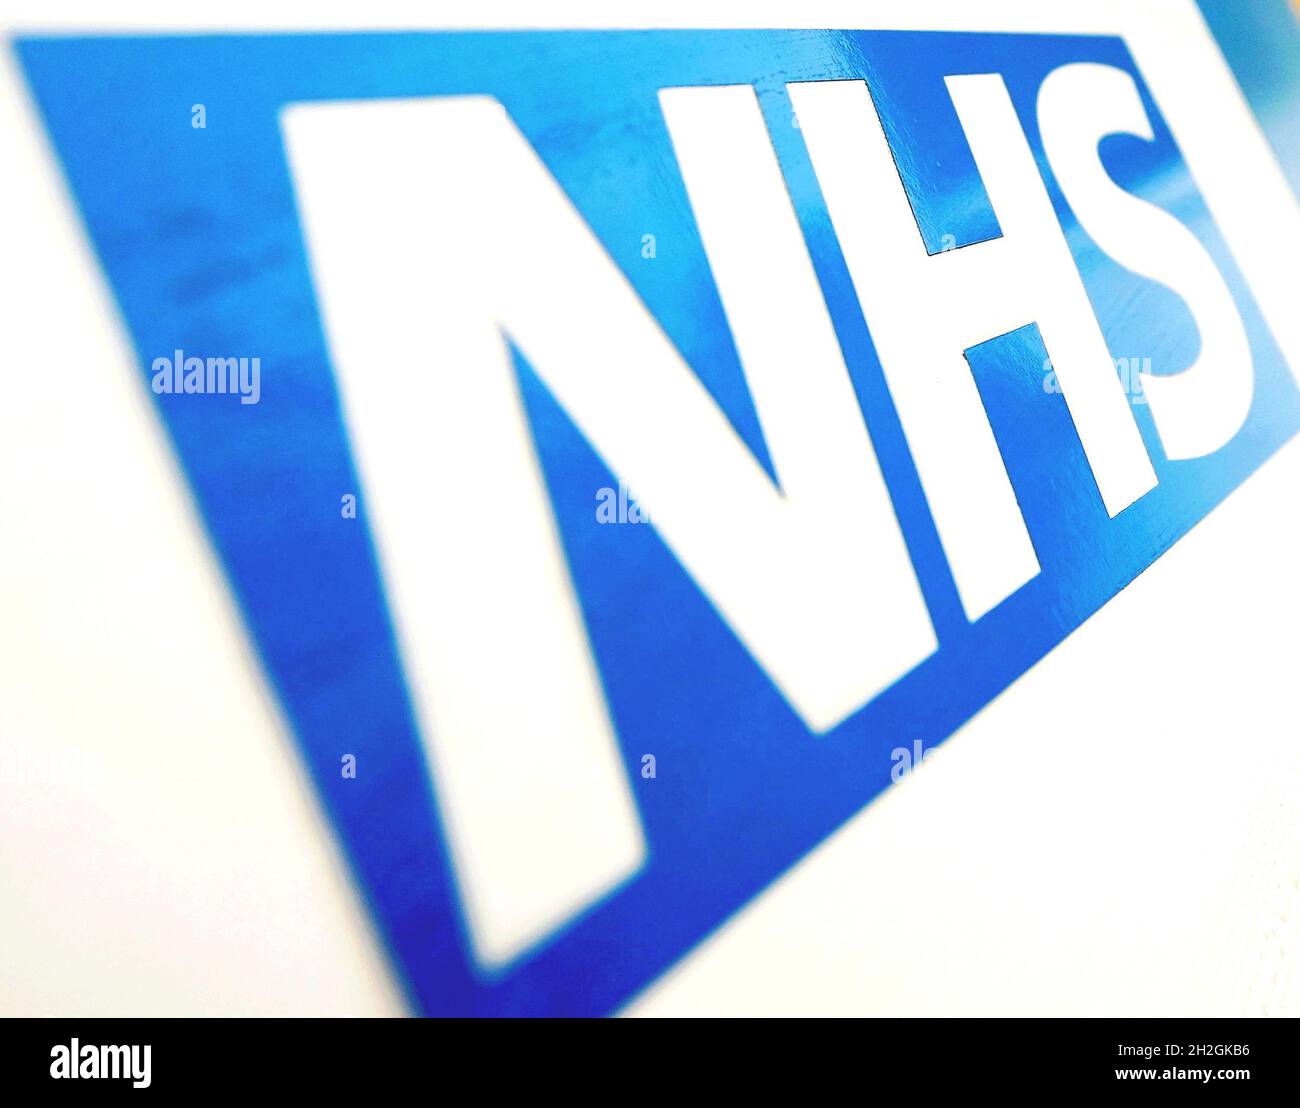 Photo du dossier datée du 06/11/10 du logo NHS.Les organismes médicaux appellent les conseils de santé et le gouvernement écossais à faire davantage pour réduire l'empreinte carbone du NHS.Date de publication : vendredi 22 octobre 2021. Banque D'Images